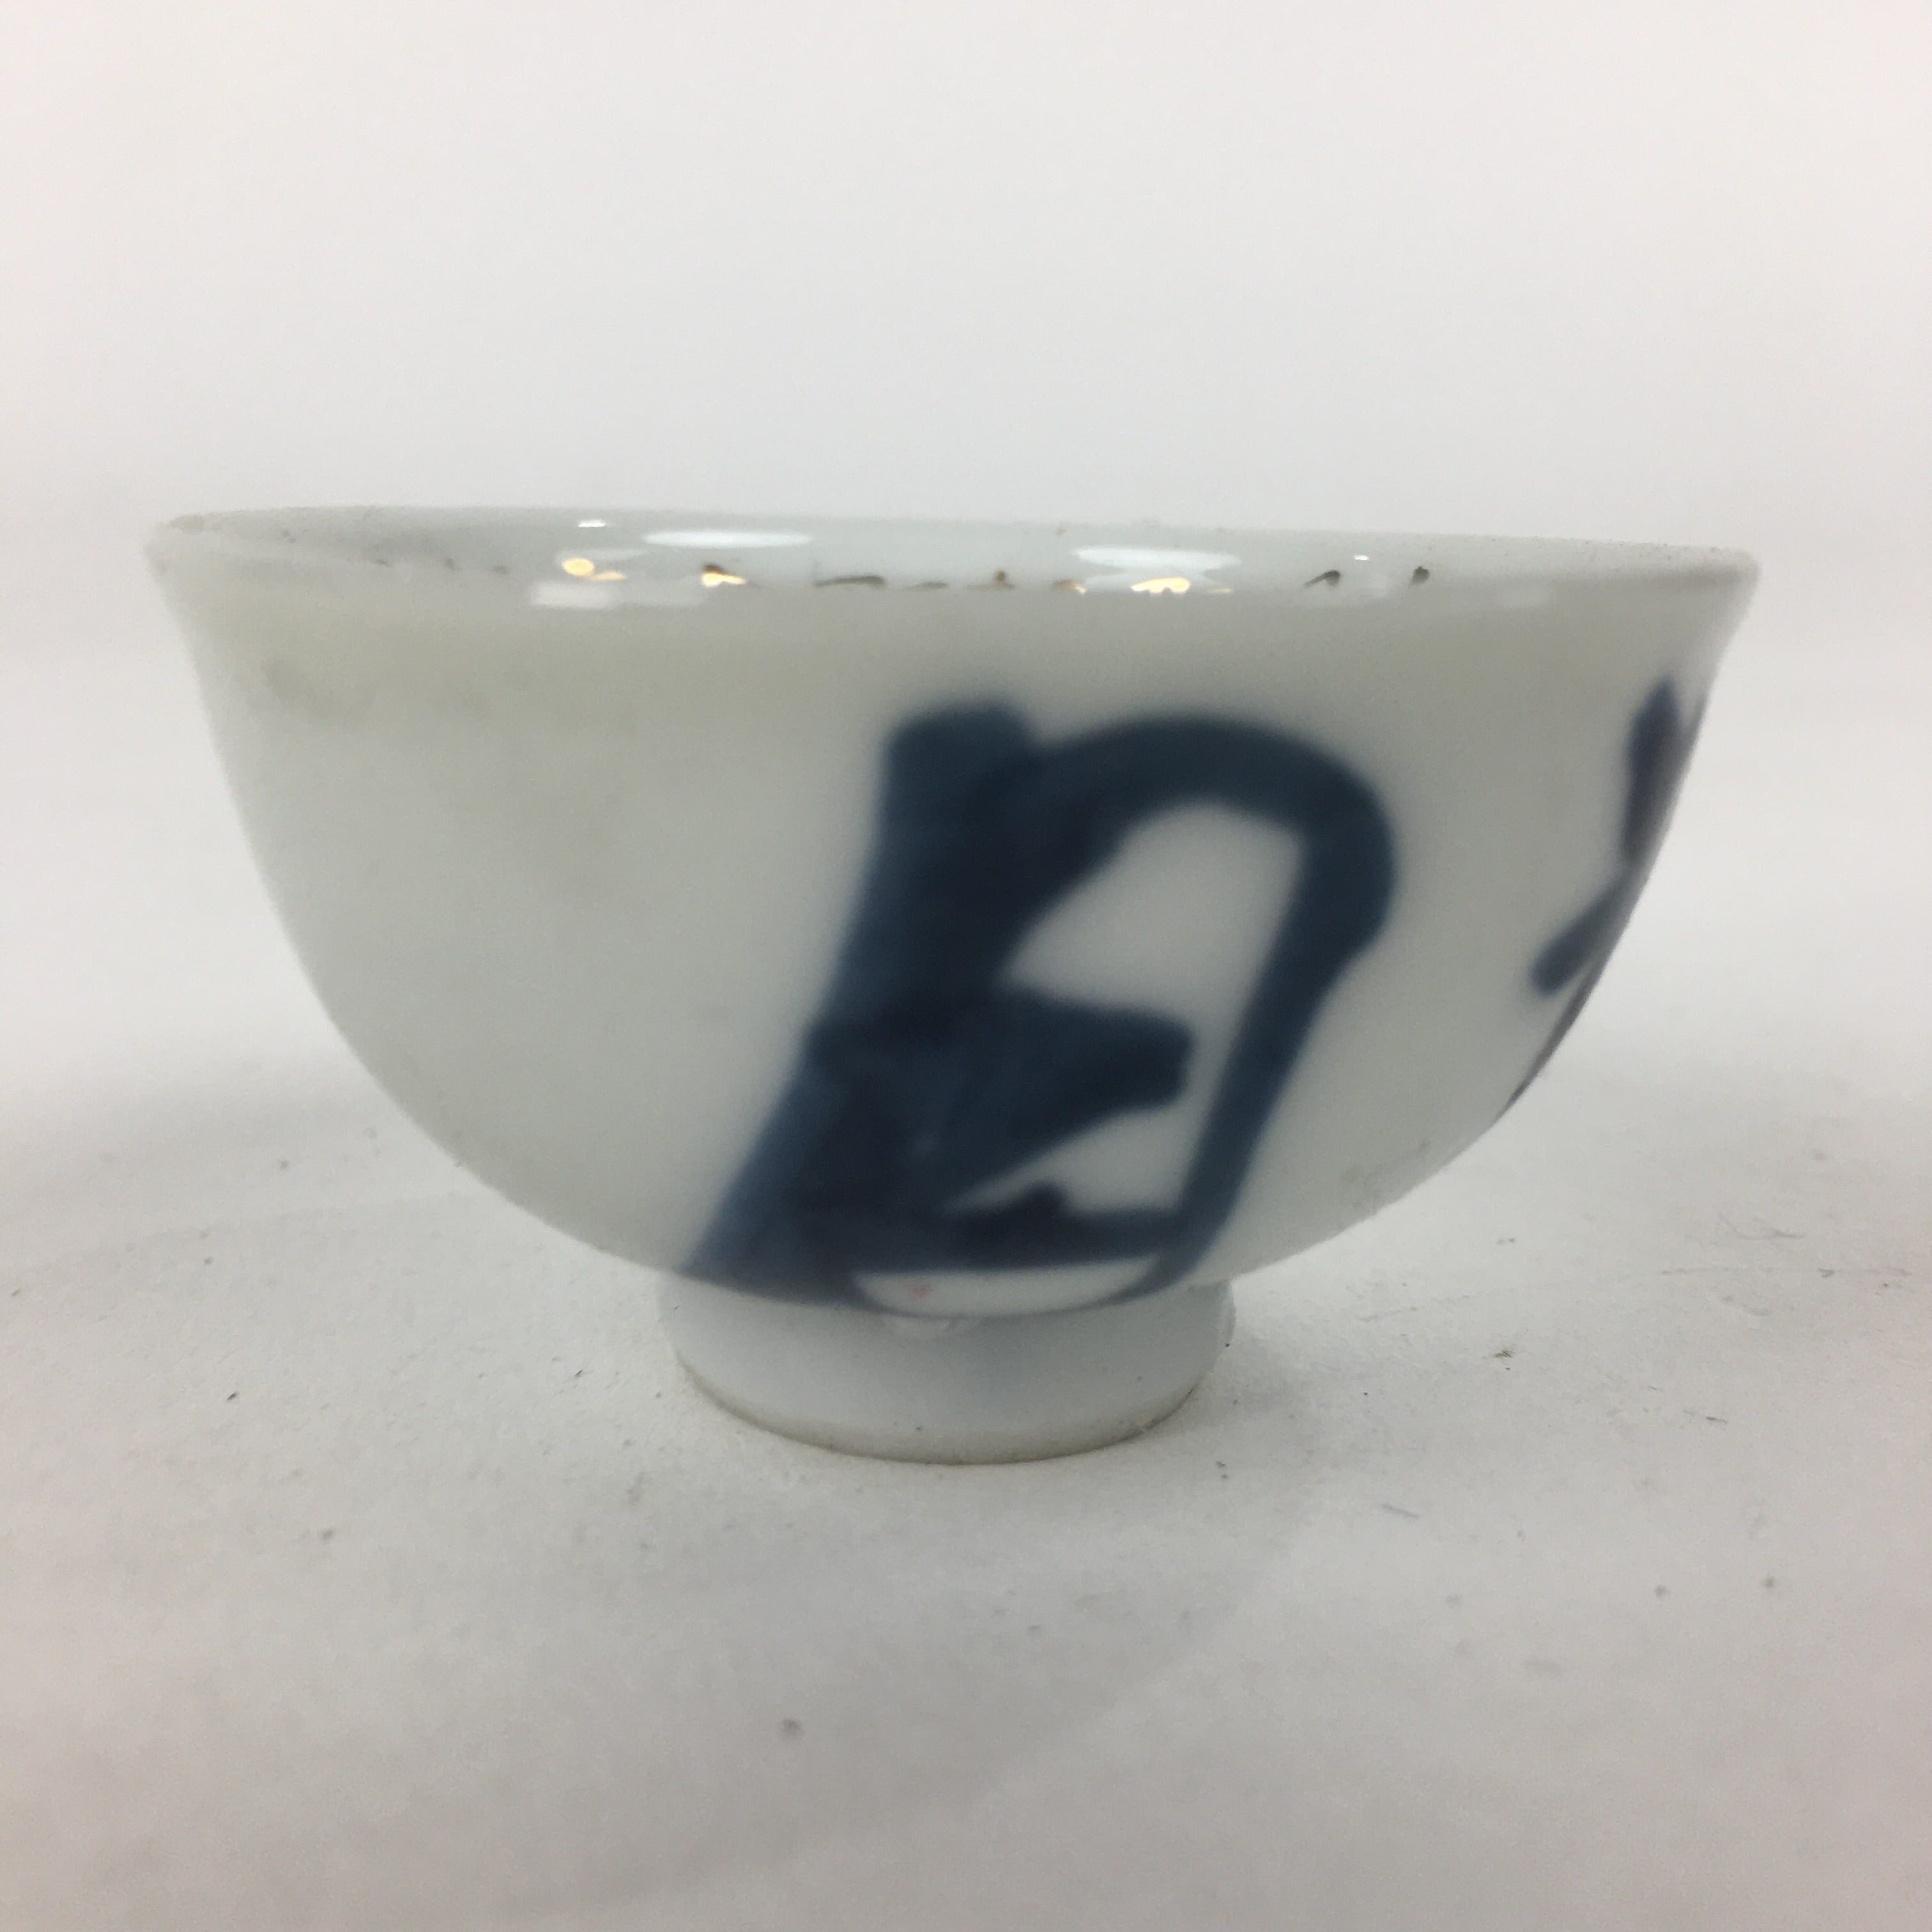 Japanese Porcelain Sake Cup Vtg Blue Kanji Design White Guinomi Ochoko G25